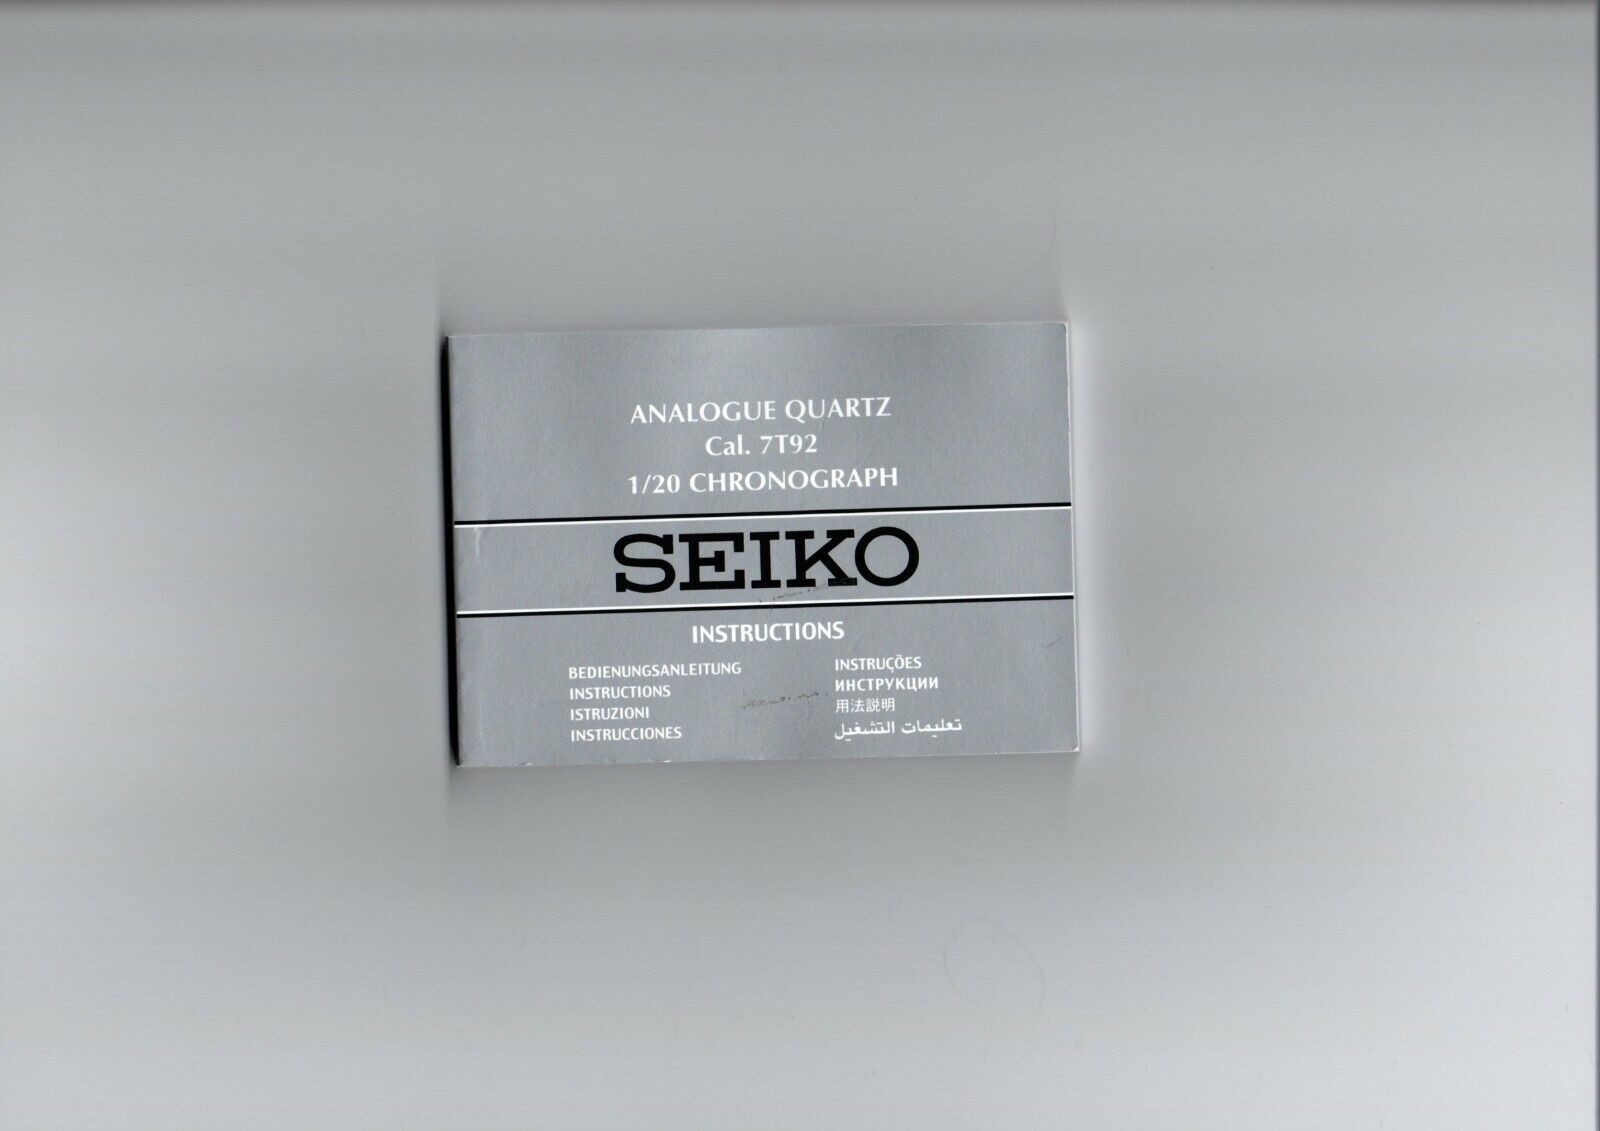 ⌚Notice Seiko Analog Quartz Cal. 7T92 1/20 Chronograph | eBay